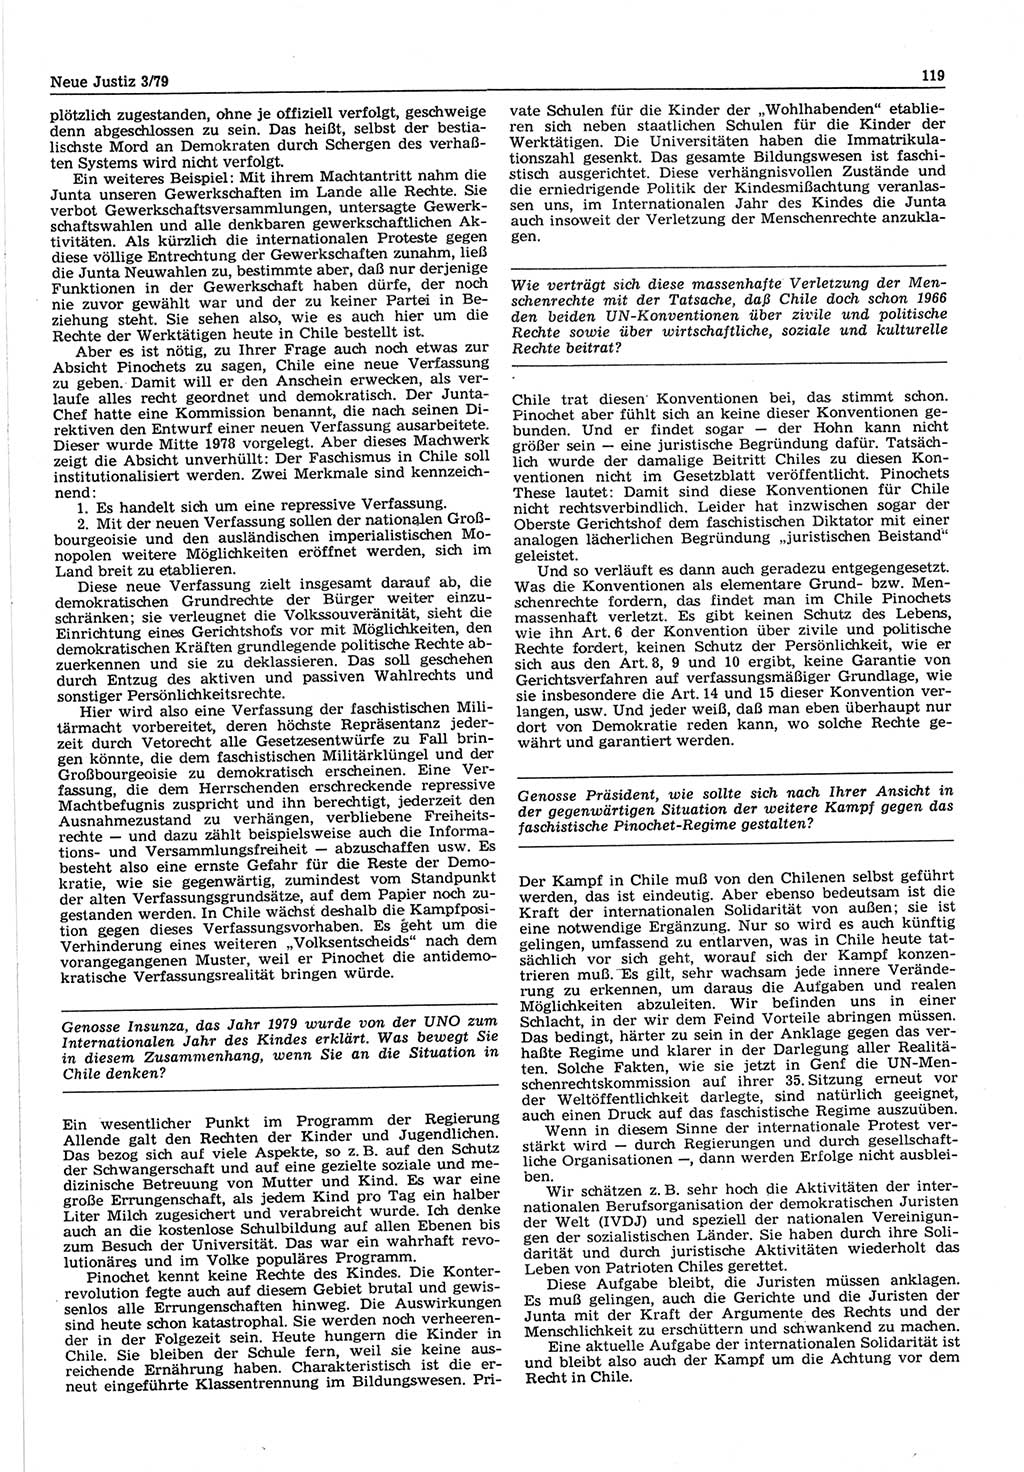 Neue Justiz (NJ), Zeitschrift für sozialistisches Recht und Gesetzlichkeit [Deutsche Demokratische Republik (DDR)], 33. Jahrgang 1979, Seite 119 (NJ DDR 1979, S. 119)